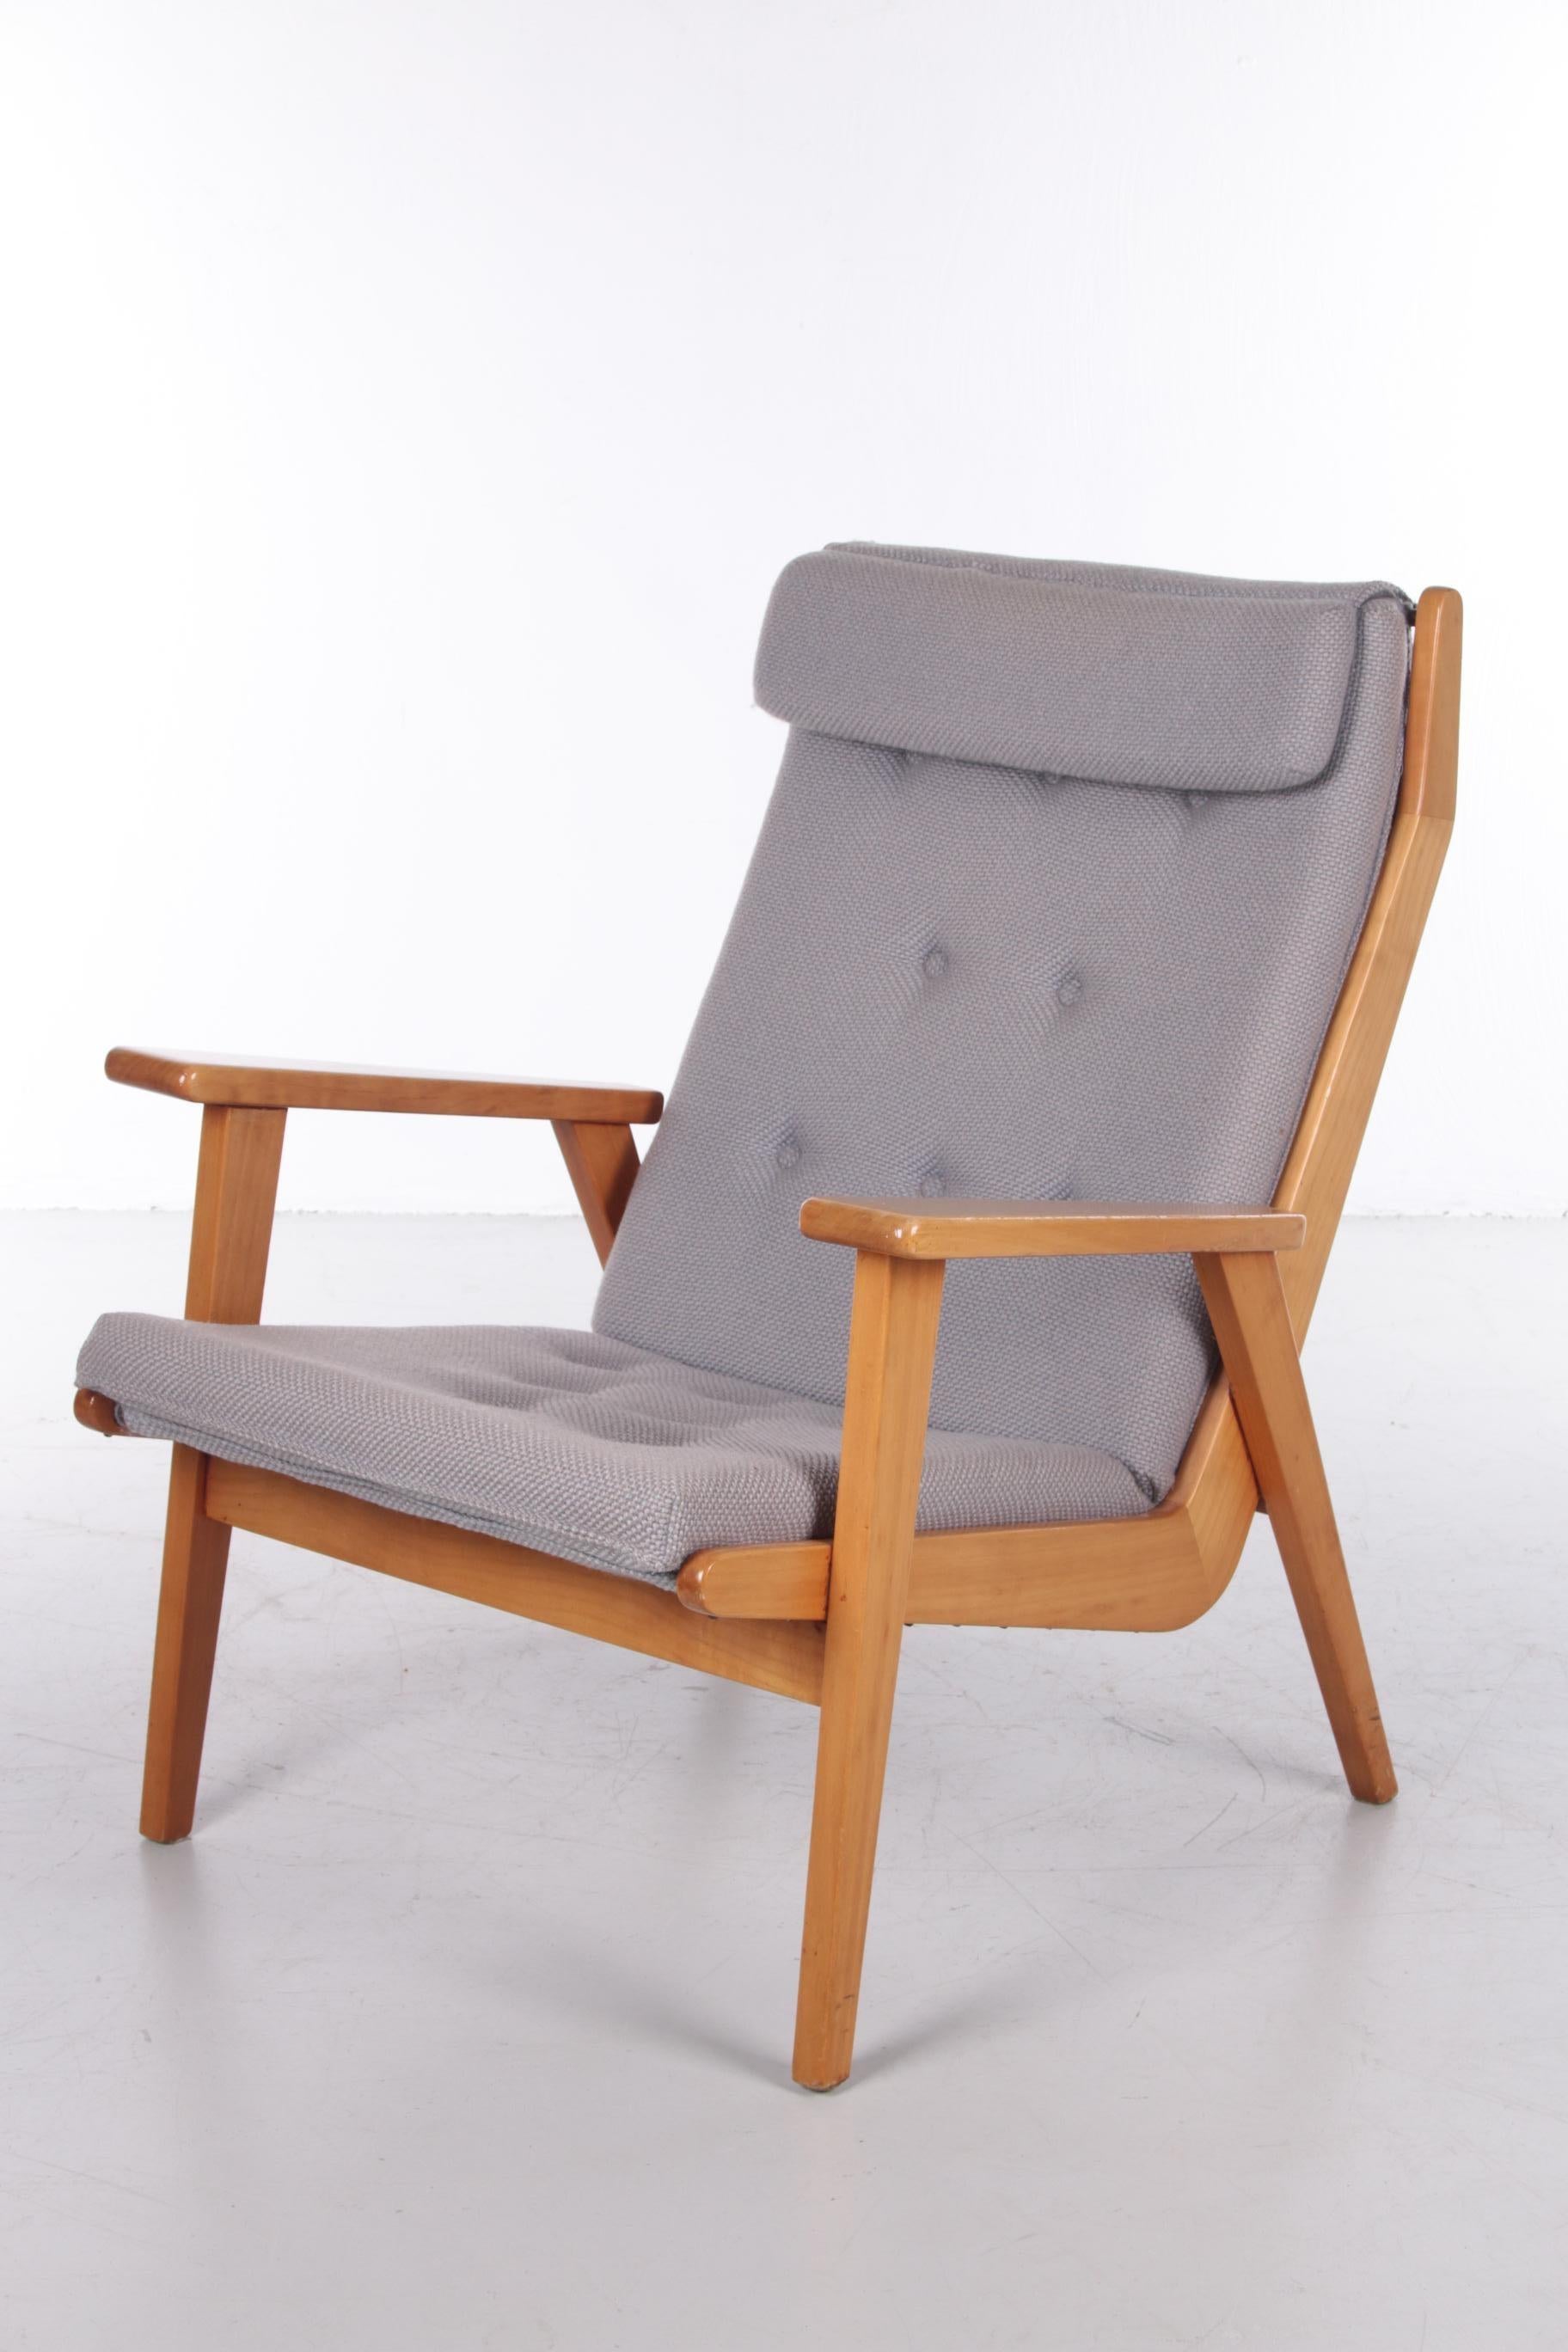 Rob Parry Lotus fauteuil vintage modèle 1611

Découvrez l'élégance intemporelle du fauteuil Vintage Rob Parry Lotus modèle 1611, une icône du design néerlandais des années 1950. Fabriquée par le célèbre fabricant de meubles Gelderland, cette chaise